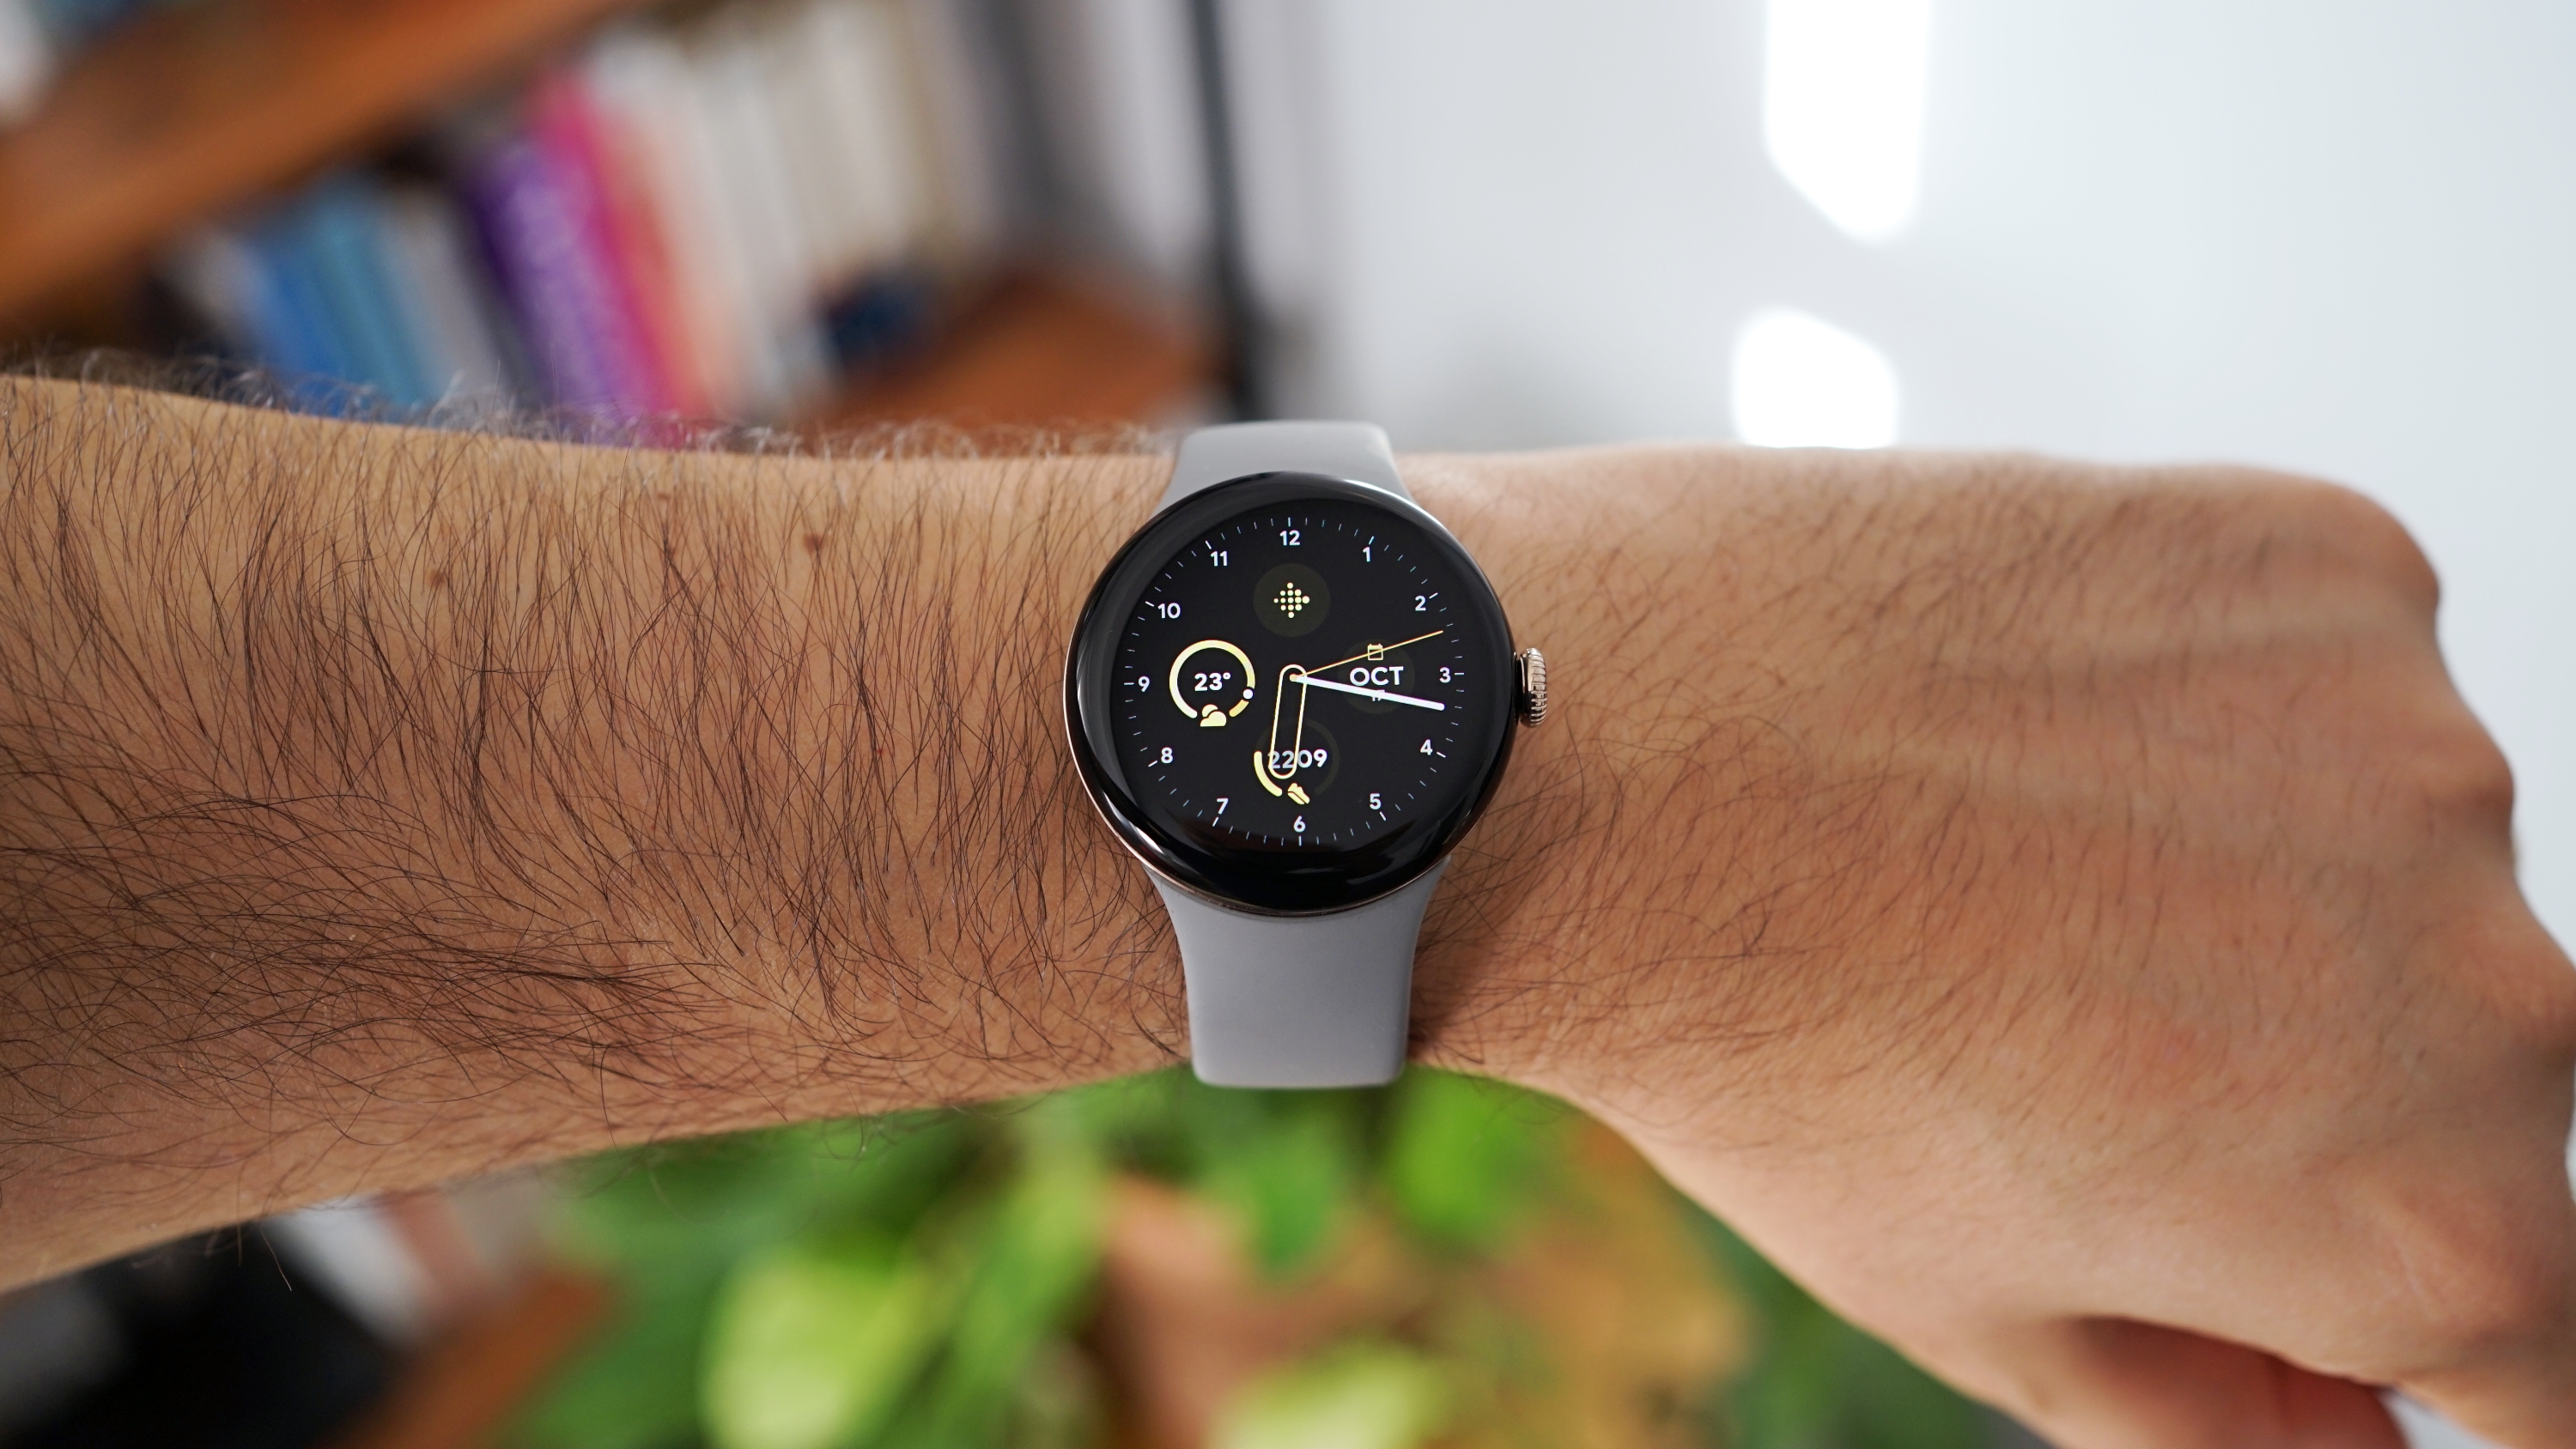 Estos son los mejores relojes inteligentes con Wear OS que puedes comprar